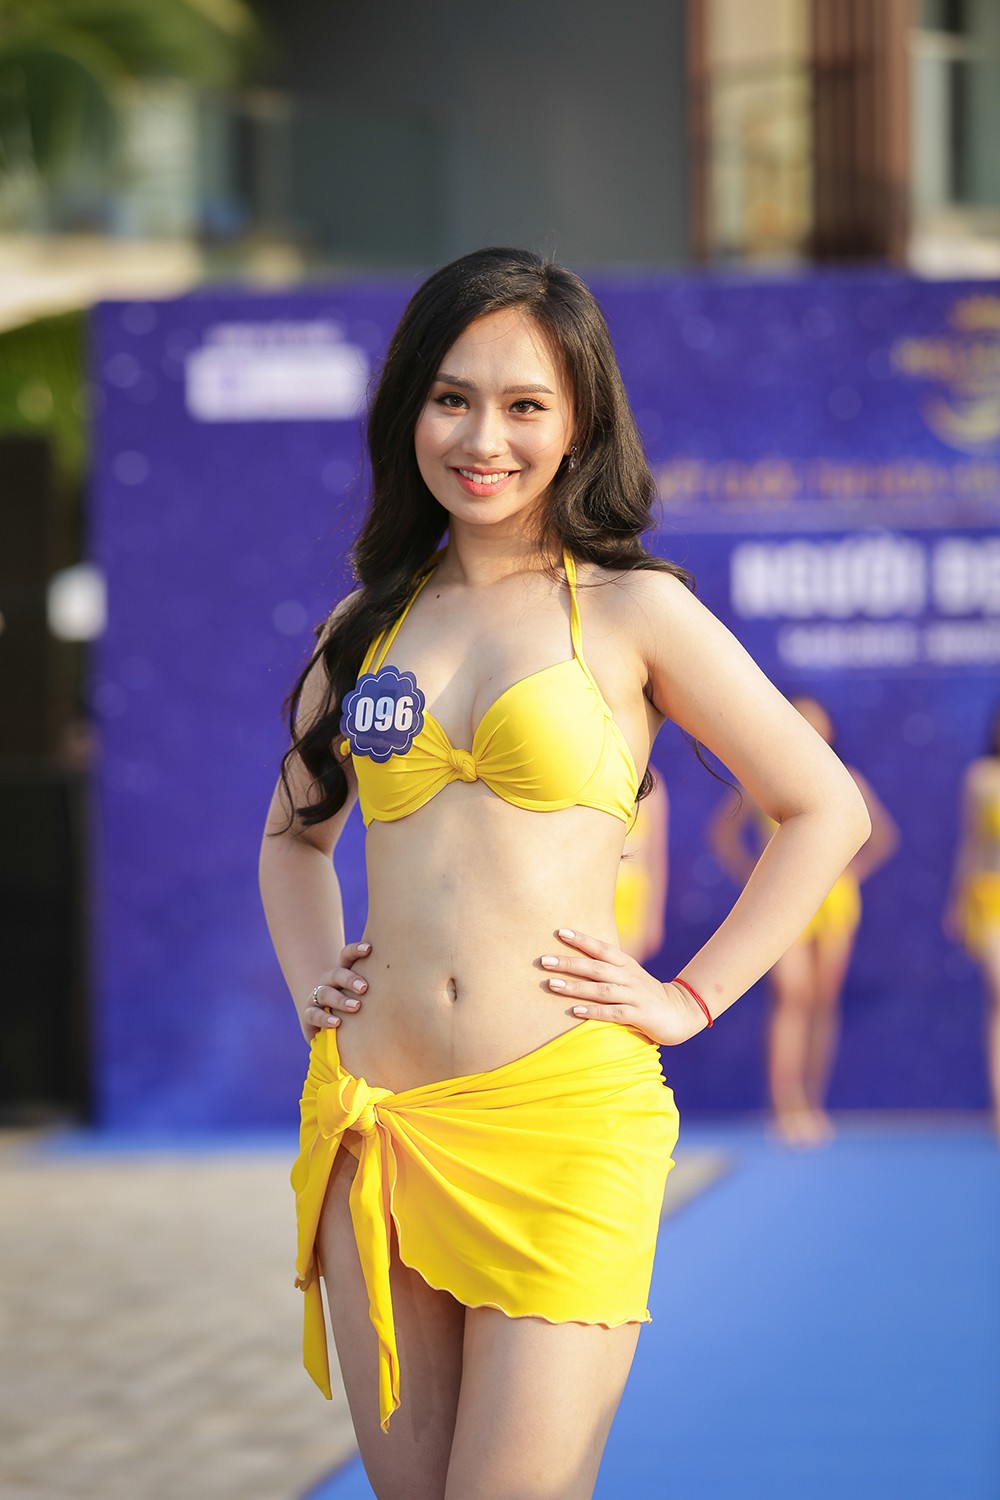 Không chỉ bị thanh tra, thí sinh Hoa hậu Biển Việt Nam toàn cầu 2018 còn lộ nhan sắc kém xinh trước thềm chung kết - Ảnh 7.